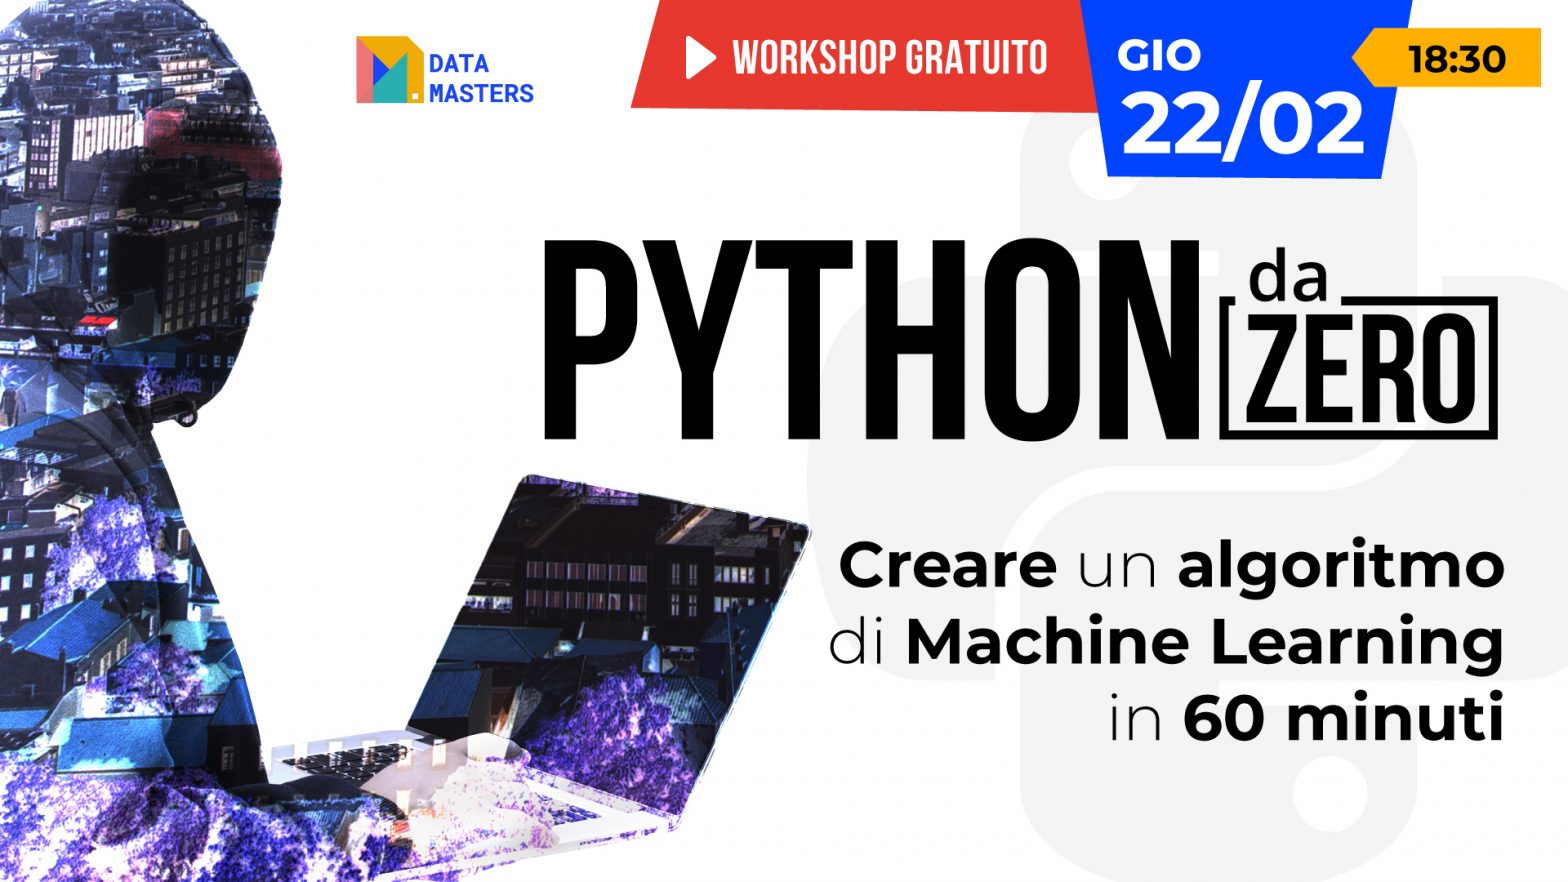 Copertina del workshop gratuito 'Impara Python da Zero' con dettagli dell'evento che mostra la data del 22 febbraio alle 18:30 e il focus su come creare un algoritmo di Machine Learning.